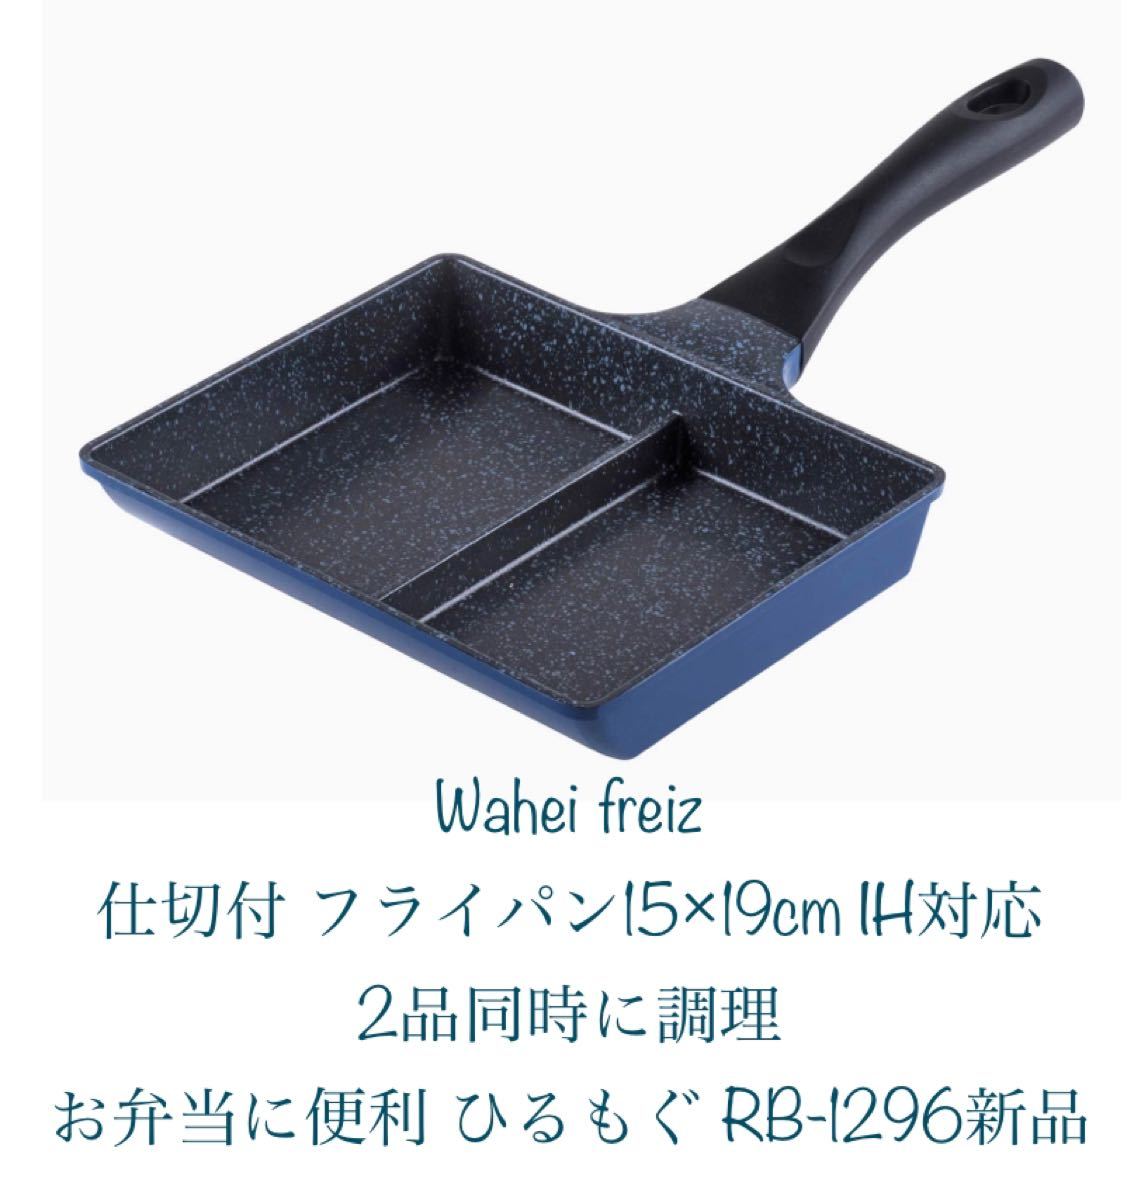 和平フレイズ(Wahei freiz) 仕切付 フライパン 15×19cm IH対応 2品同時に調理 お弁当に便利 ひるもぐ 